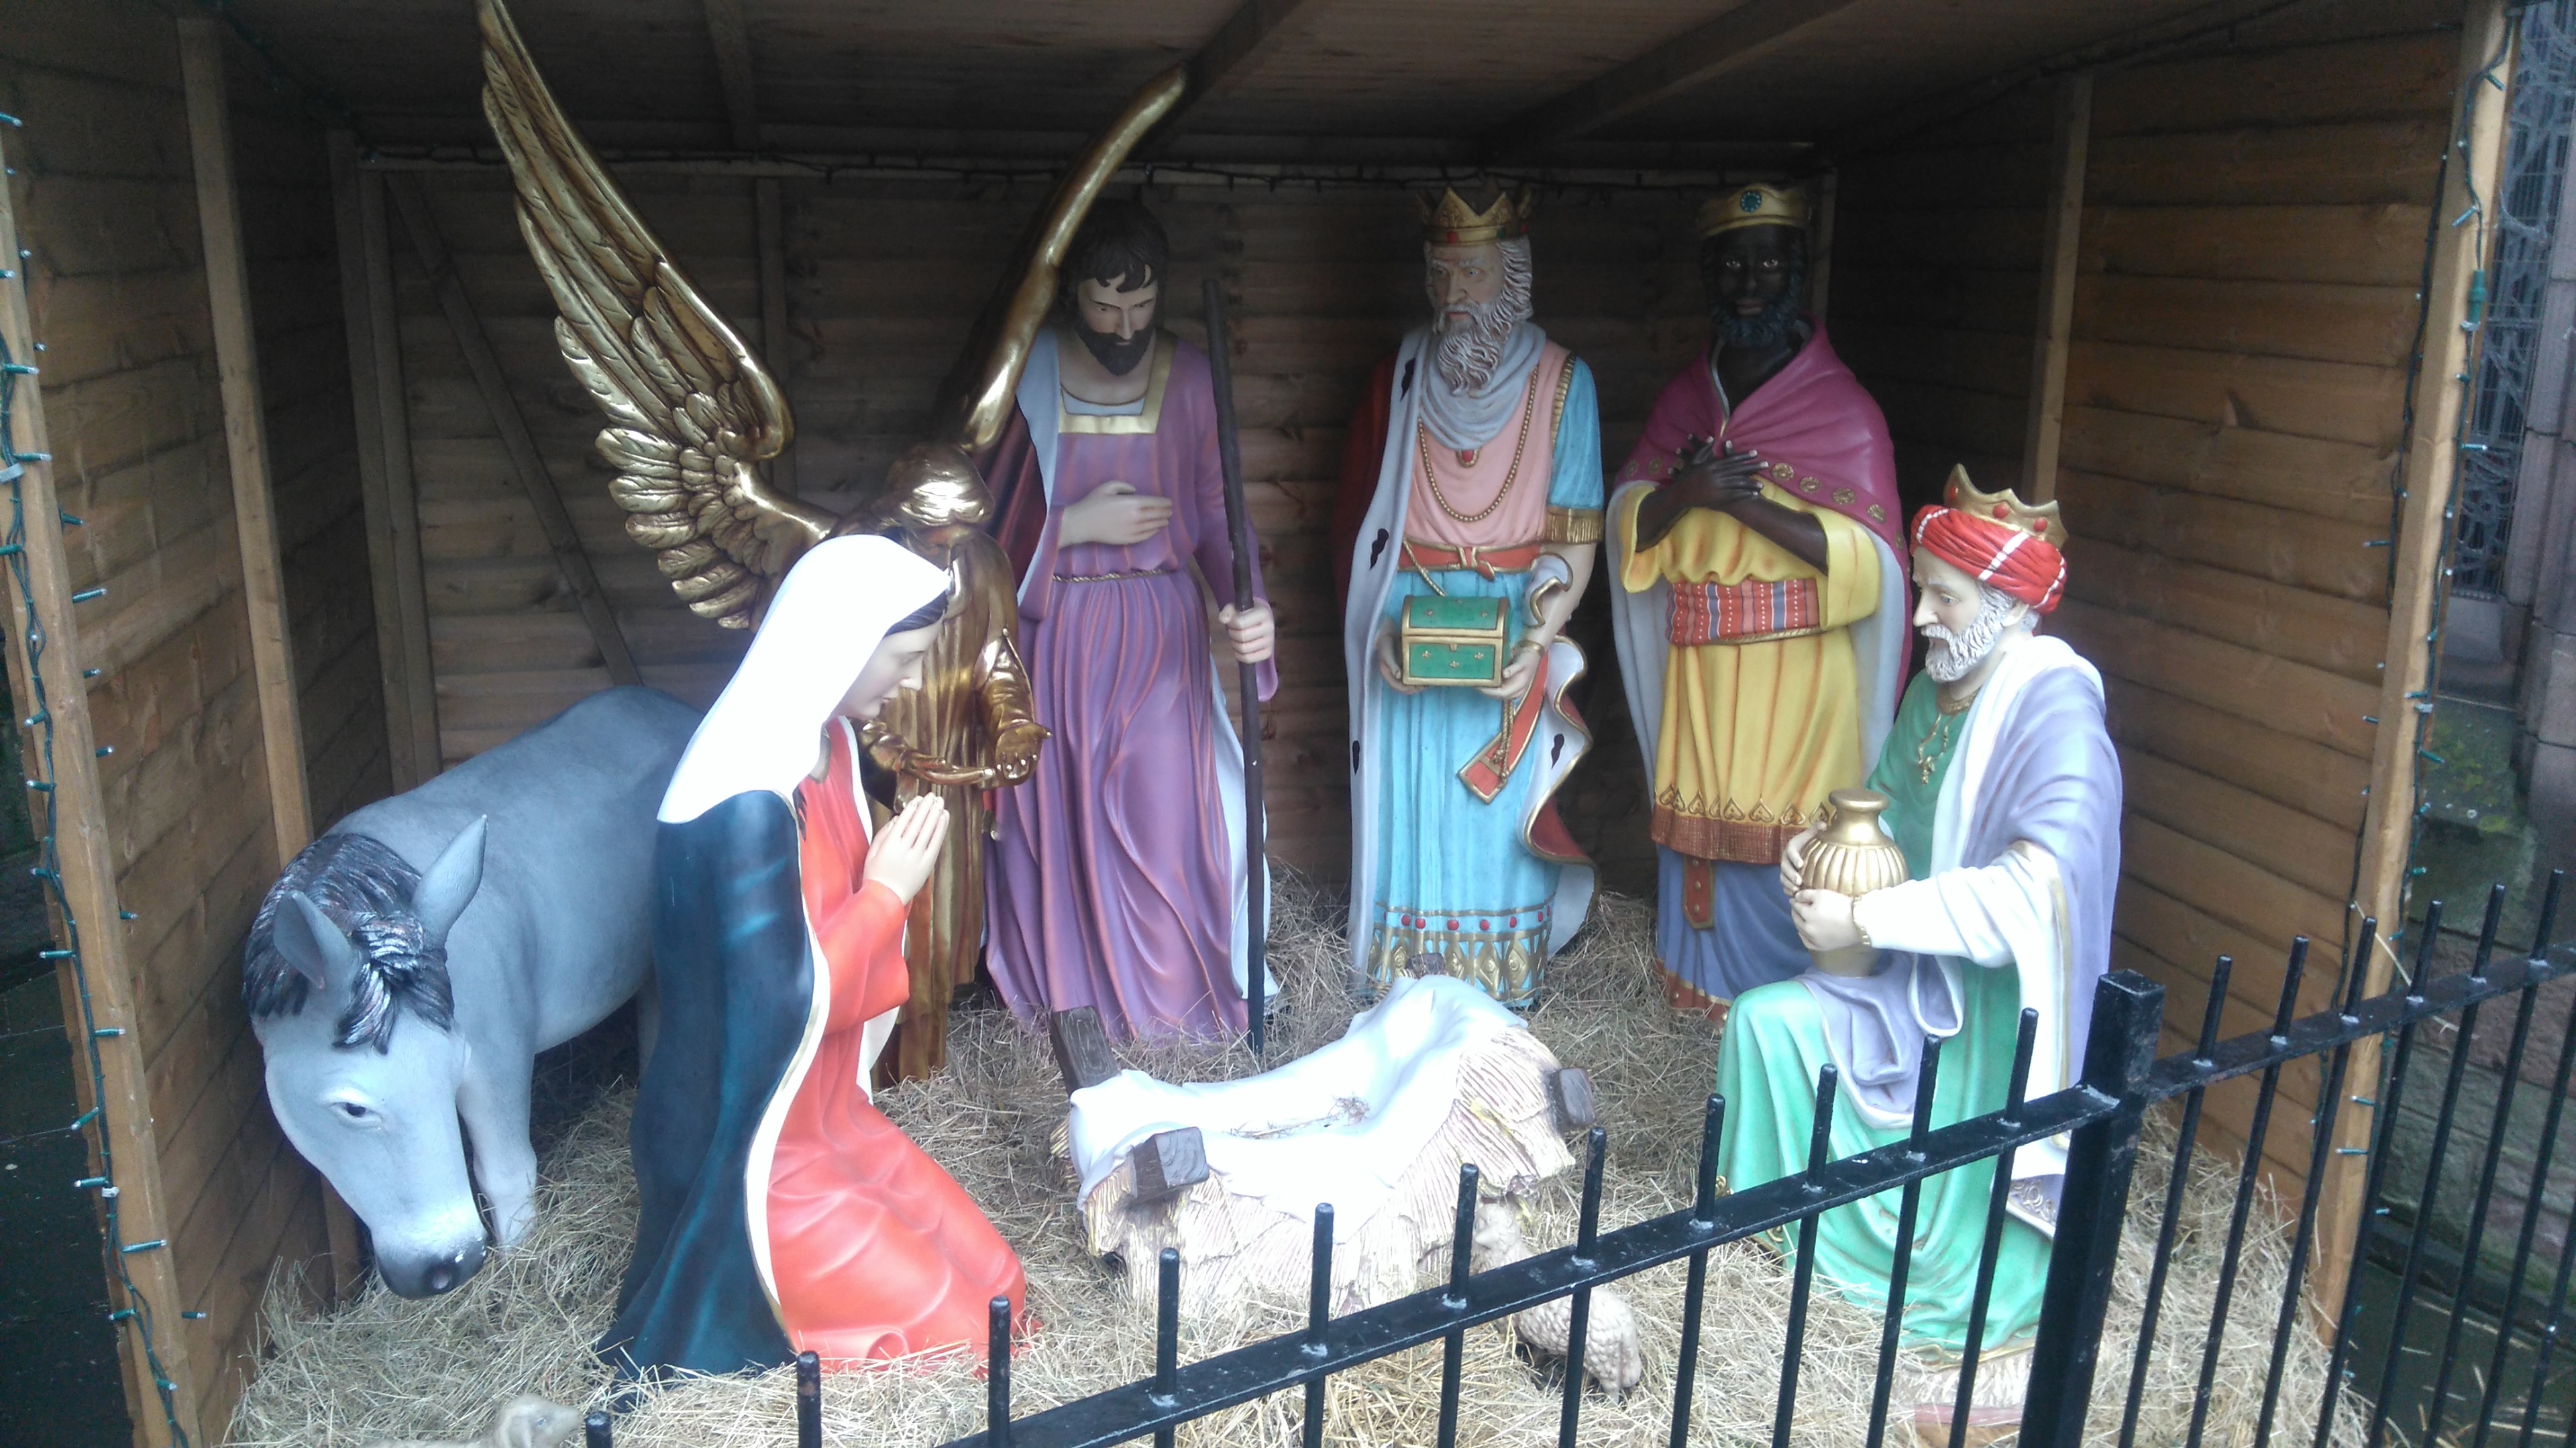 The Nativity Scene at St John's Kirk, awaiting the model's return.